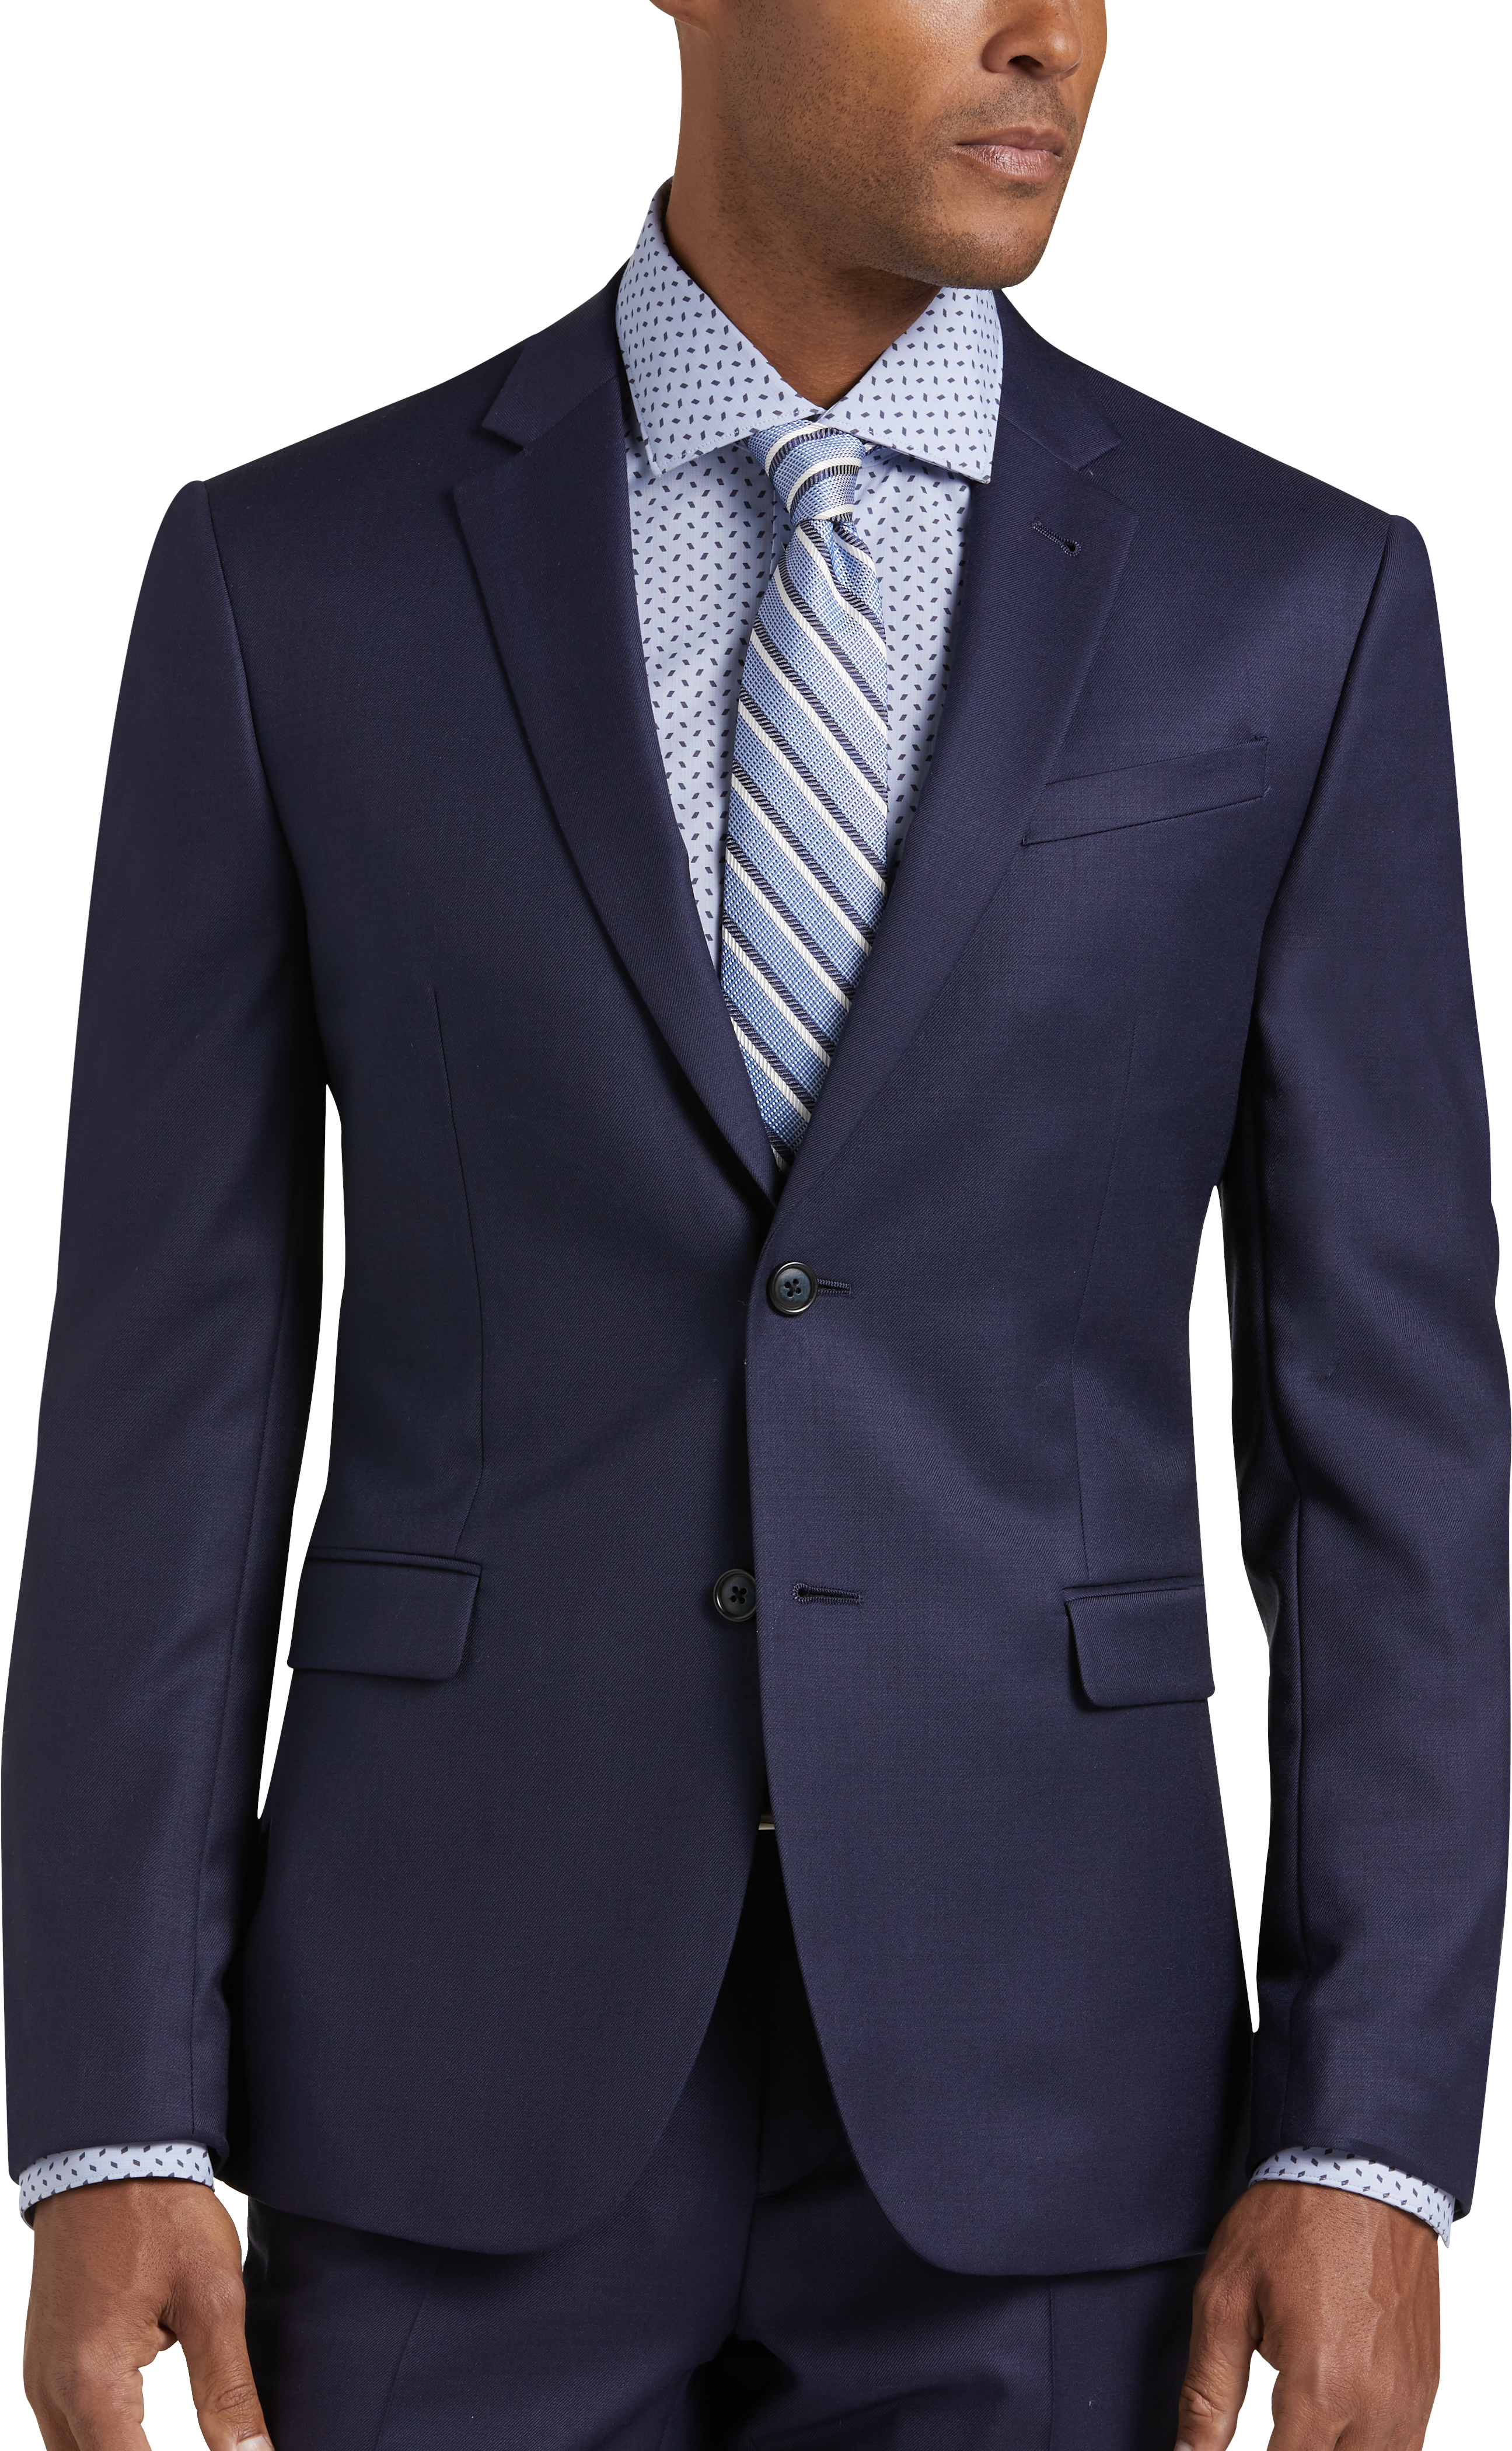 JOE Joseph Abboud Blue Extreme Slim Fit Suit - Men's Suits | Men's ...